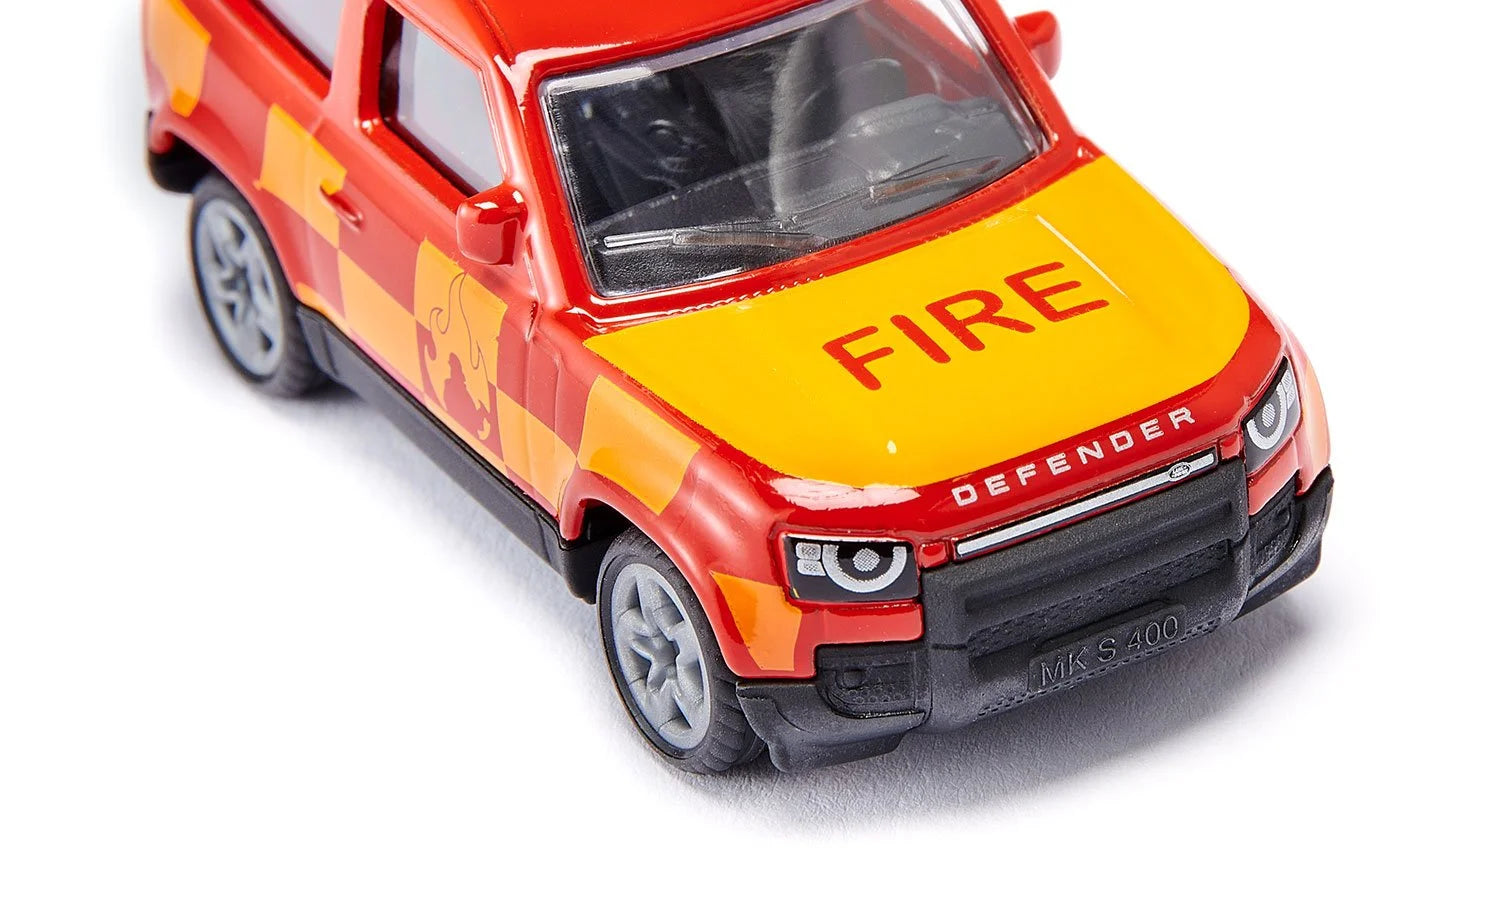 Siku 1:87 Land Rover Defender Fire Brigade